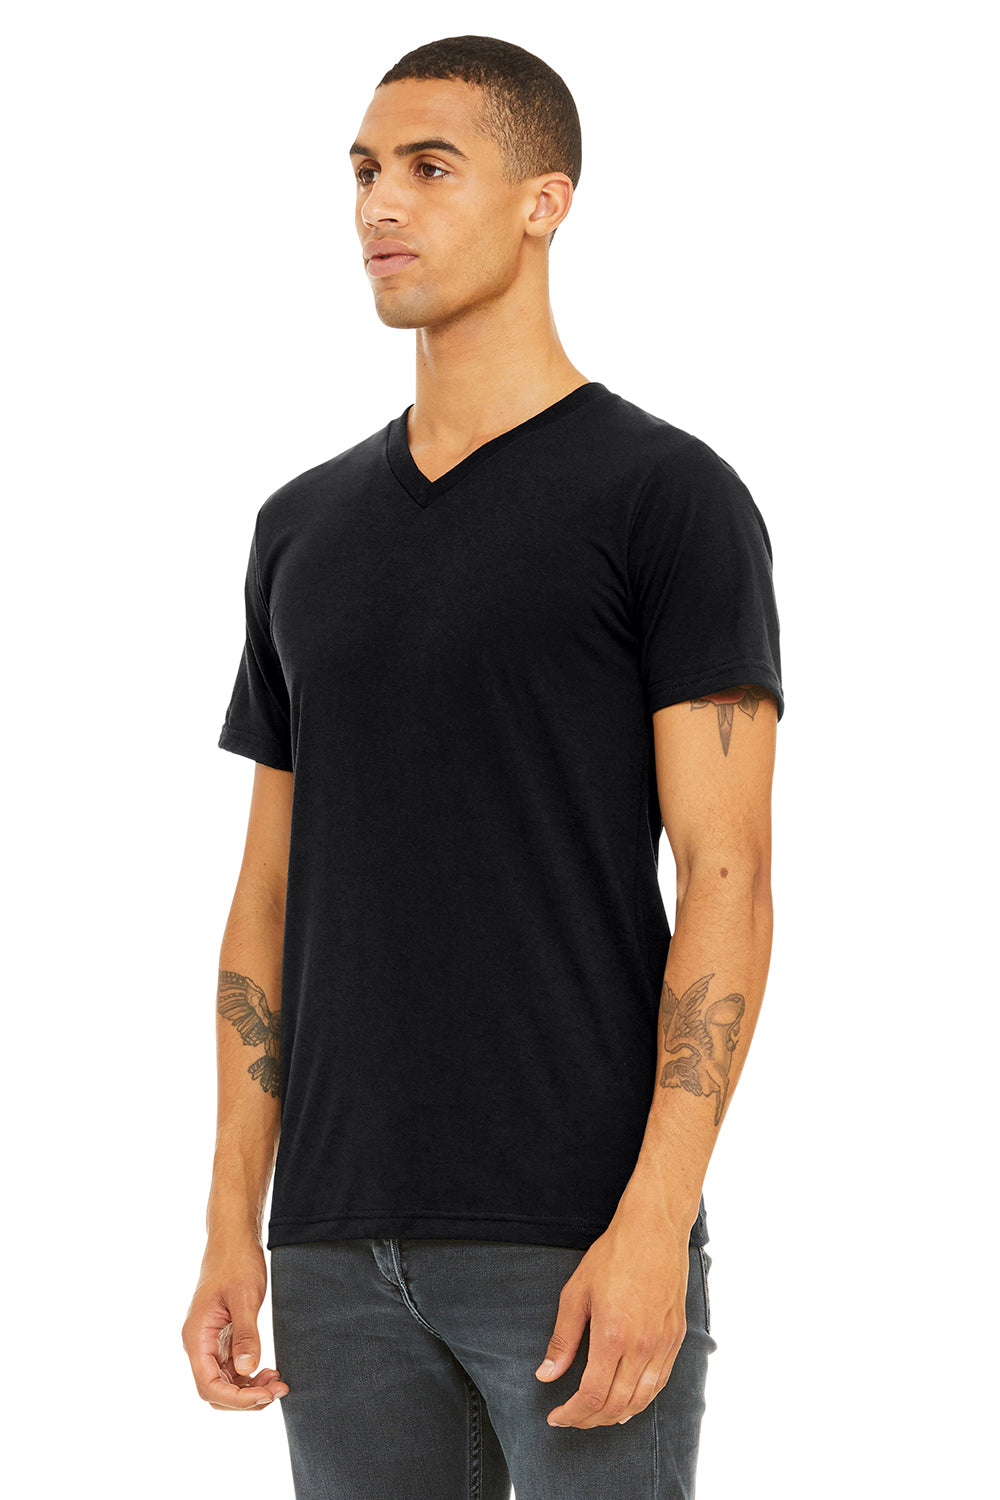 Bella + Canvas BC3415/3415C/3415 Mens Short Sleeve V-Neck T-Shirt Solid Black Model 3Q